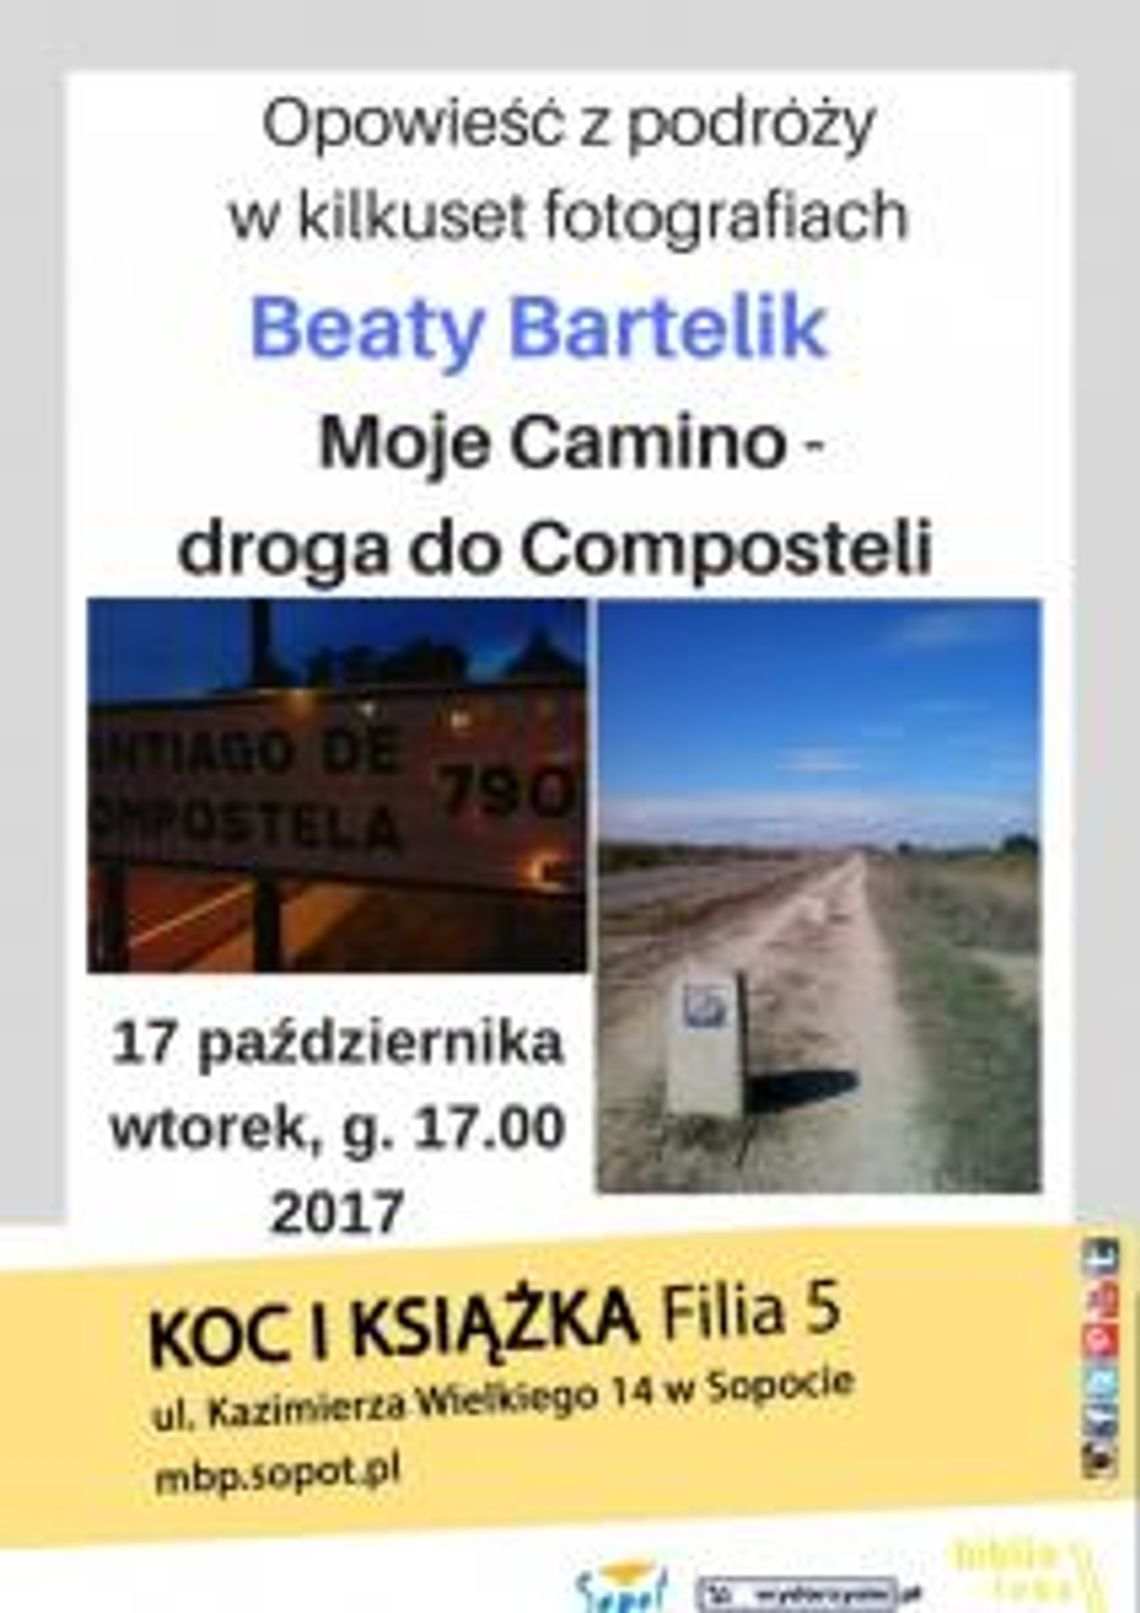 Opowieści z podróży Beaty Bartelik w kilkuset fotografiach pt. „Moje Camino - droga do Composteli”.